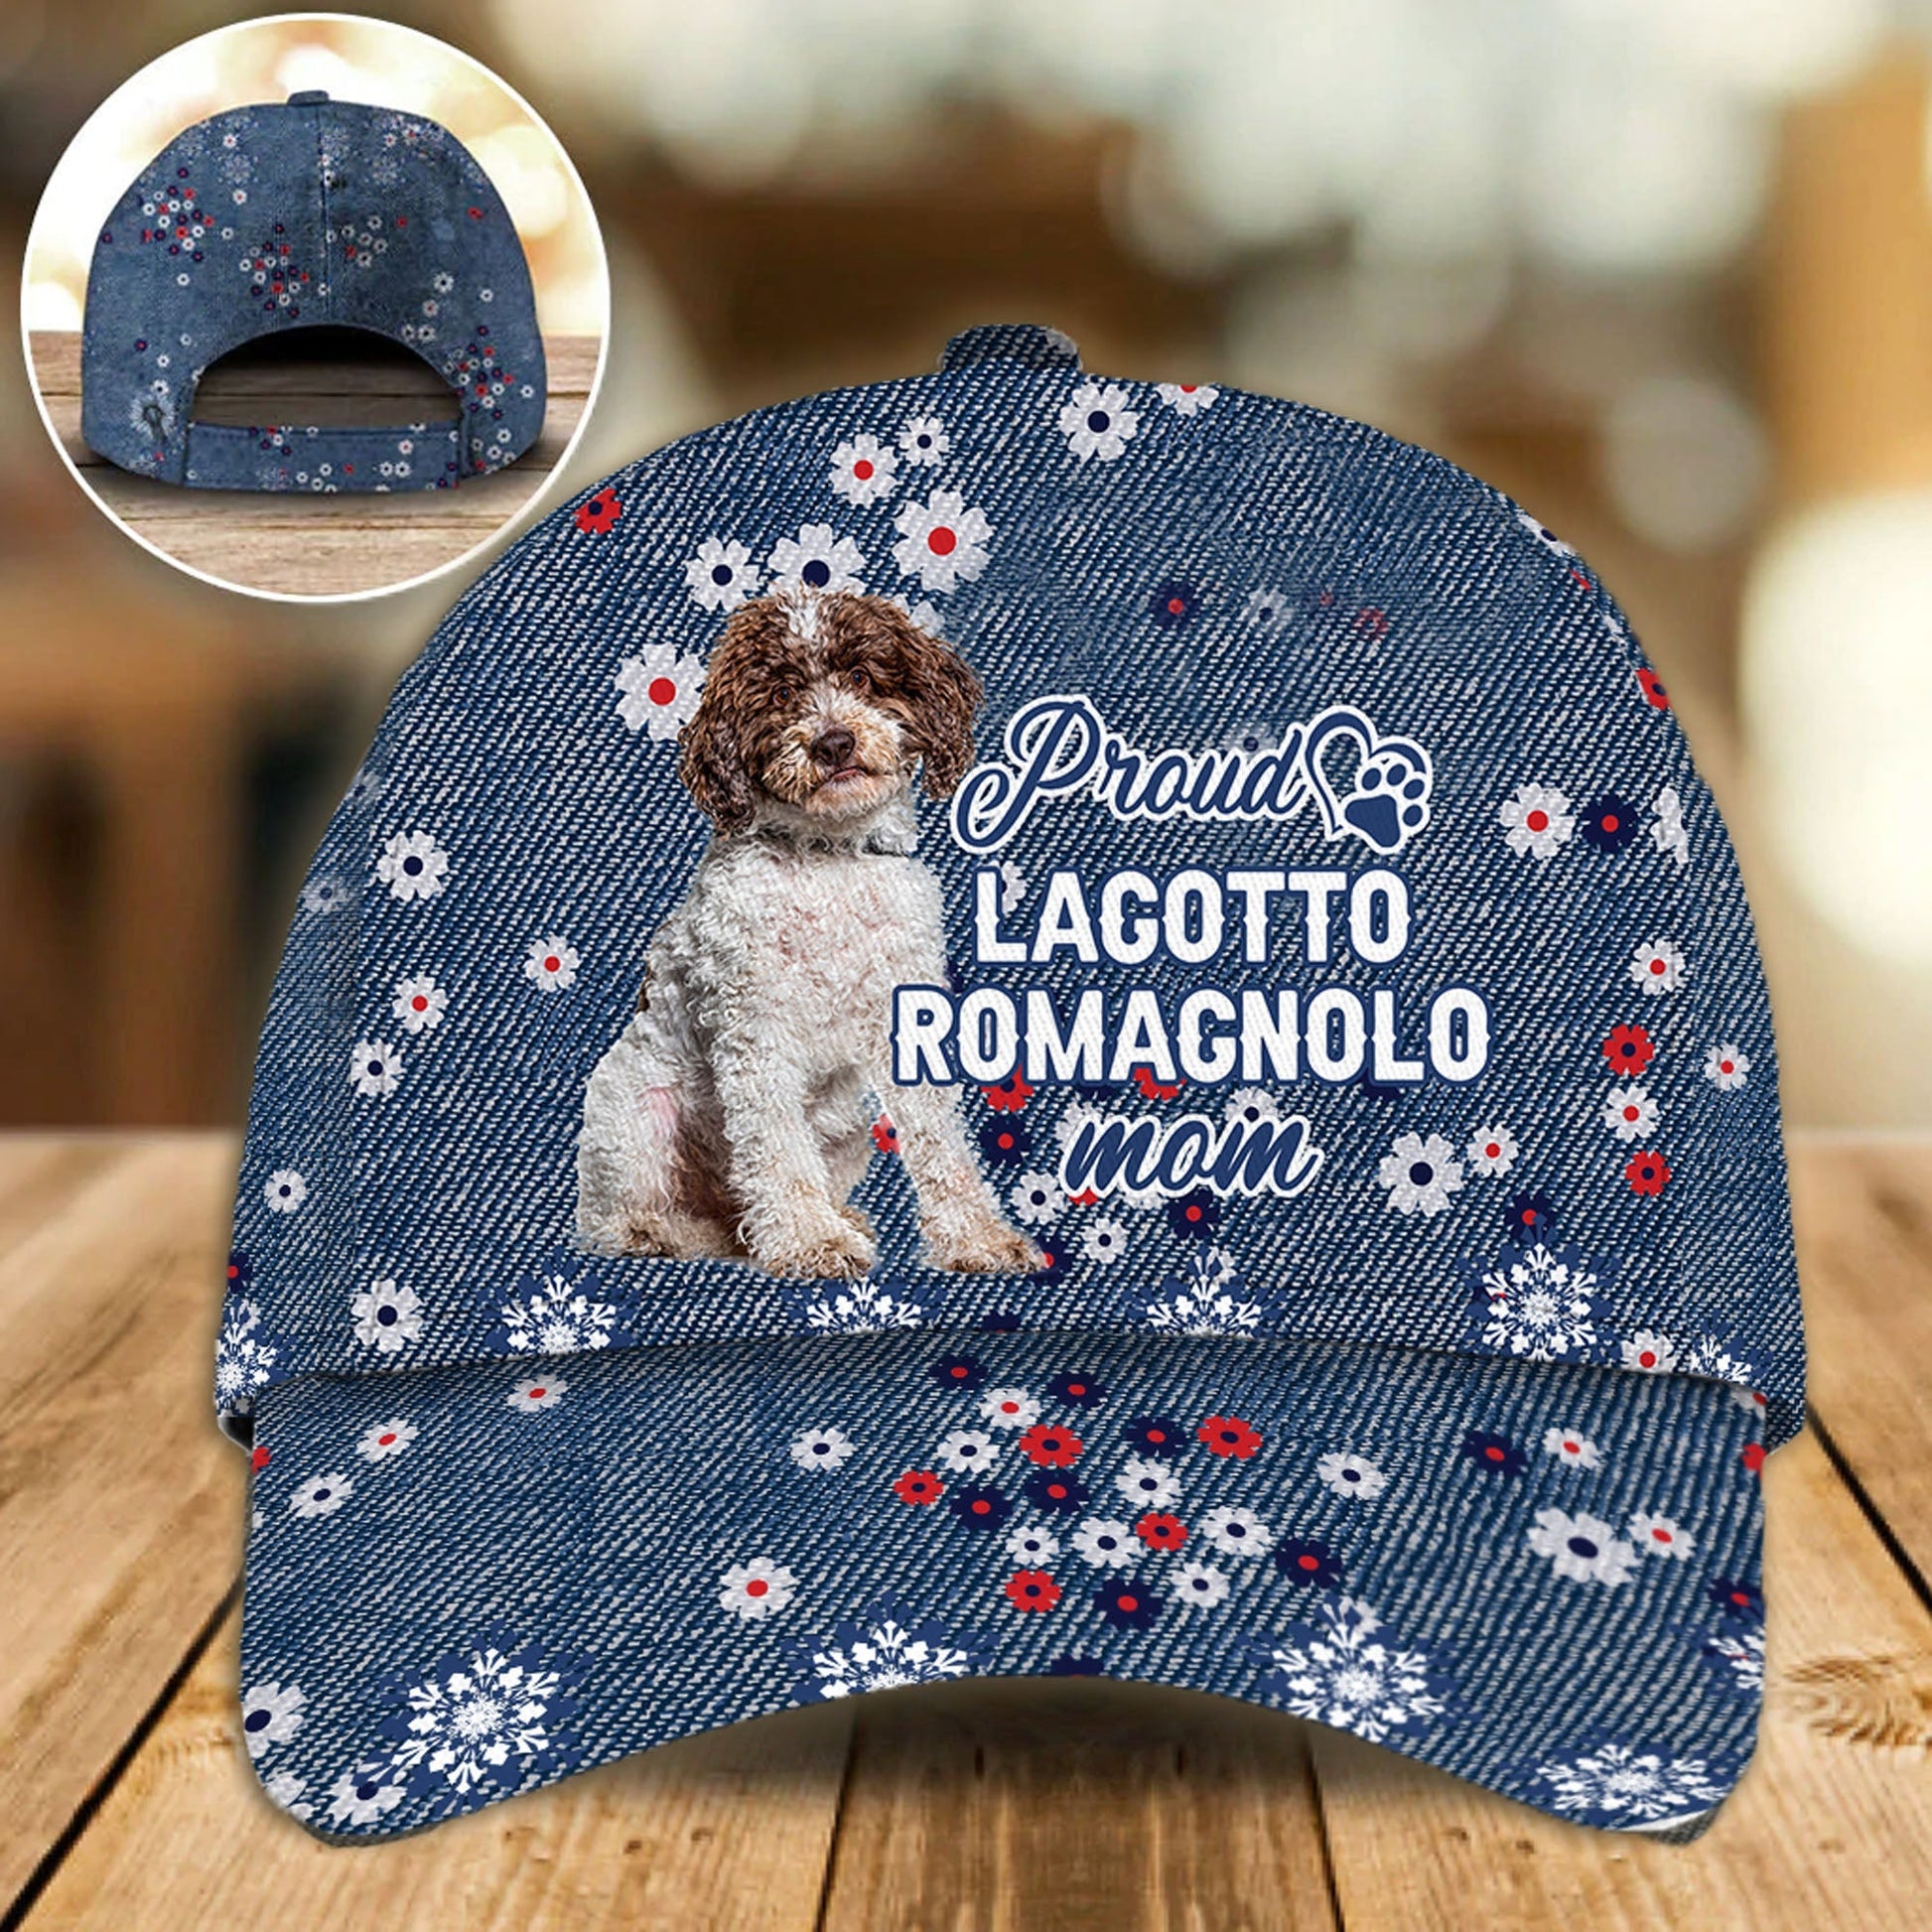 LAGOTTO ROMAGNOLO - PROUD MOM - CAP - Animals Kind